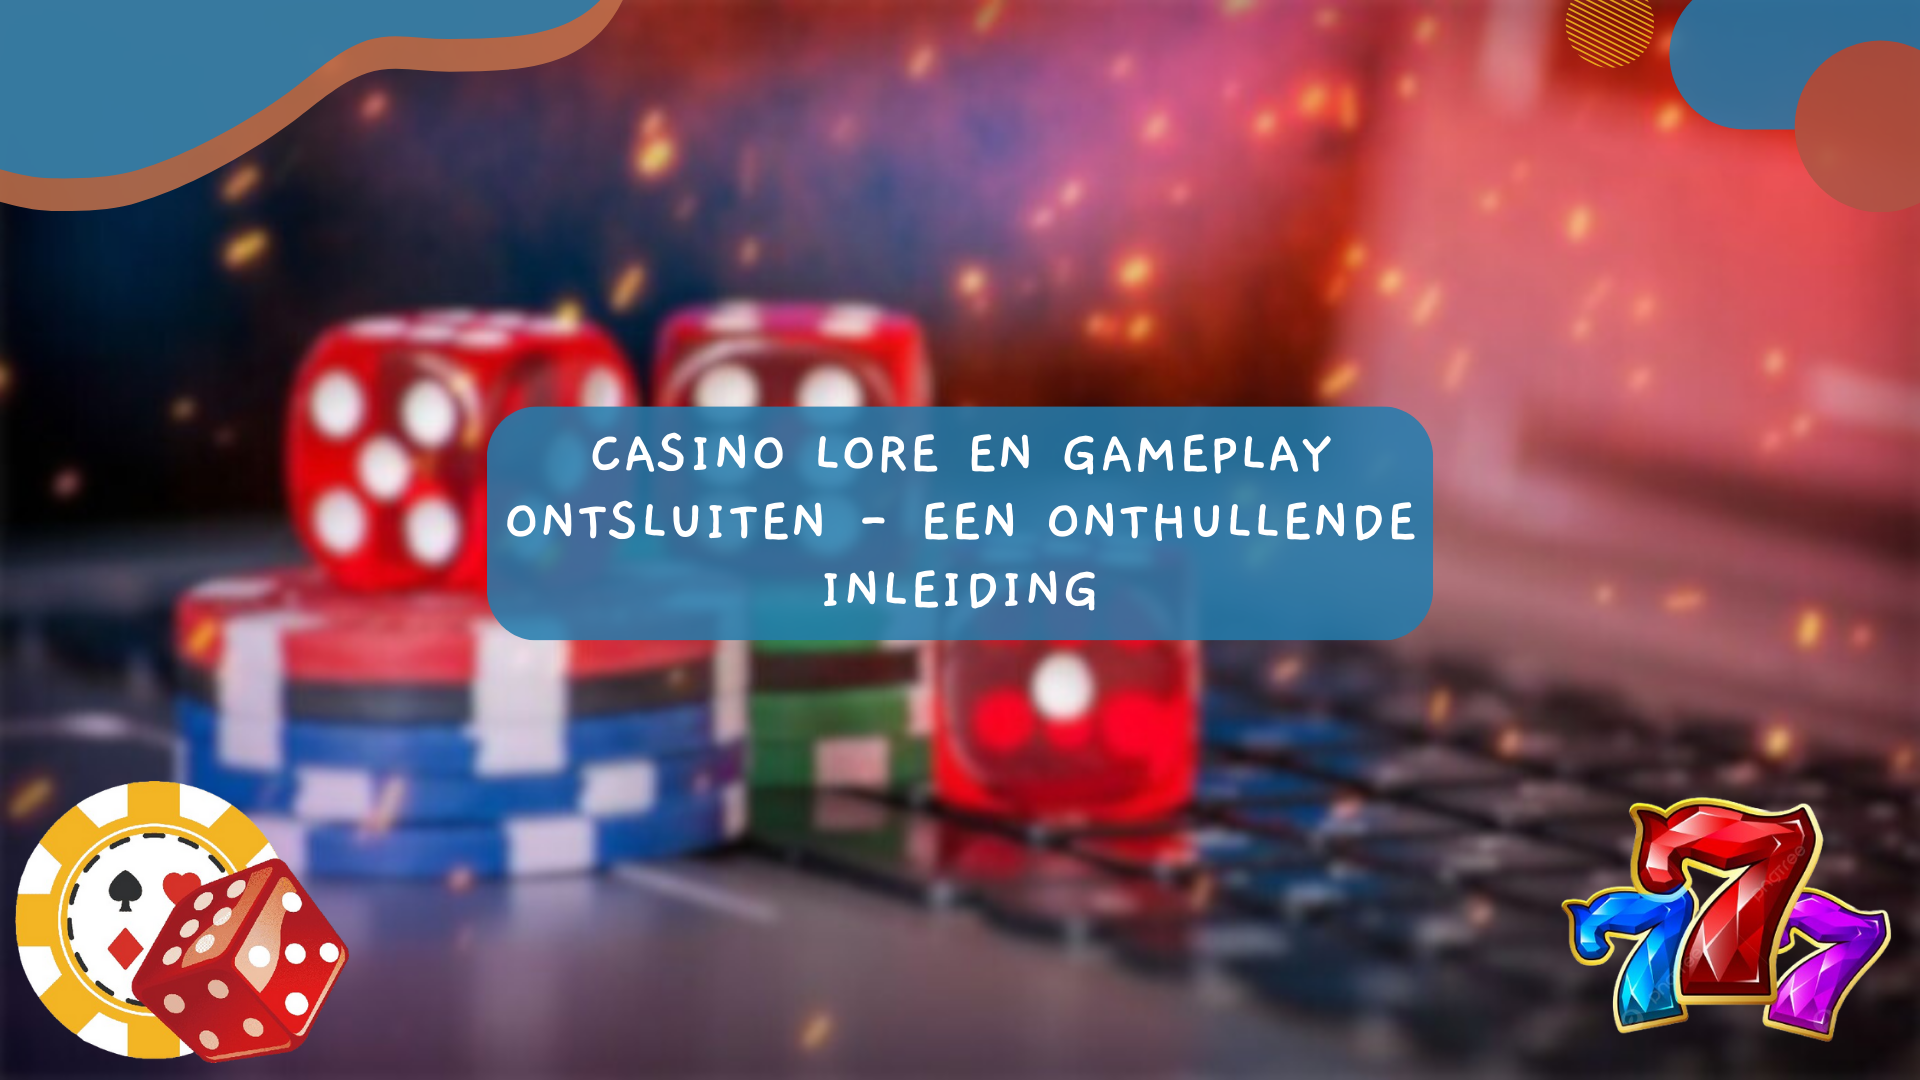 Casino Lore en Gameplay ontsluiten - Een onthullende inleiding